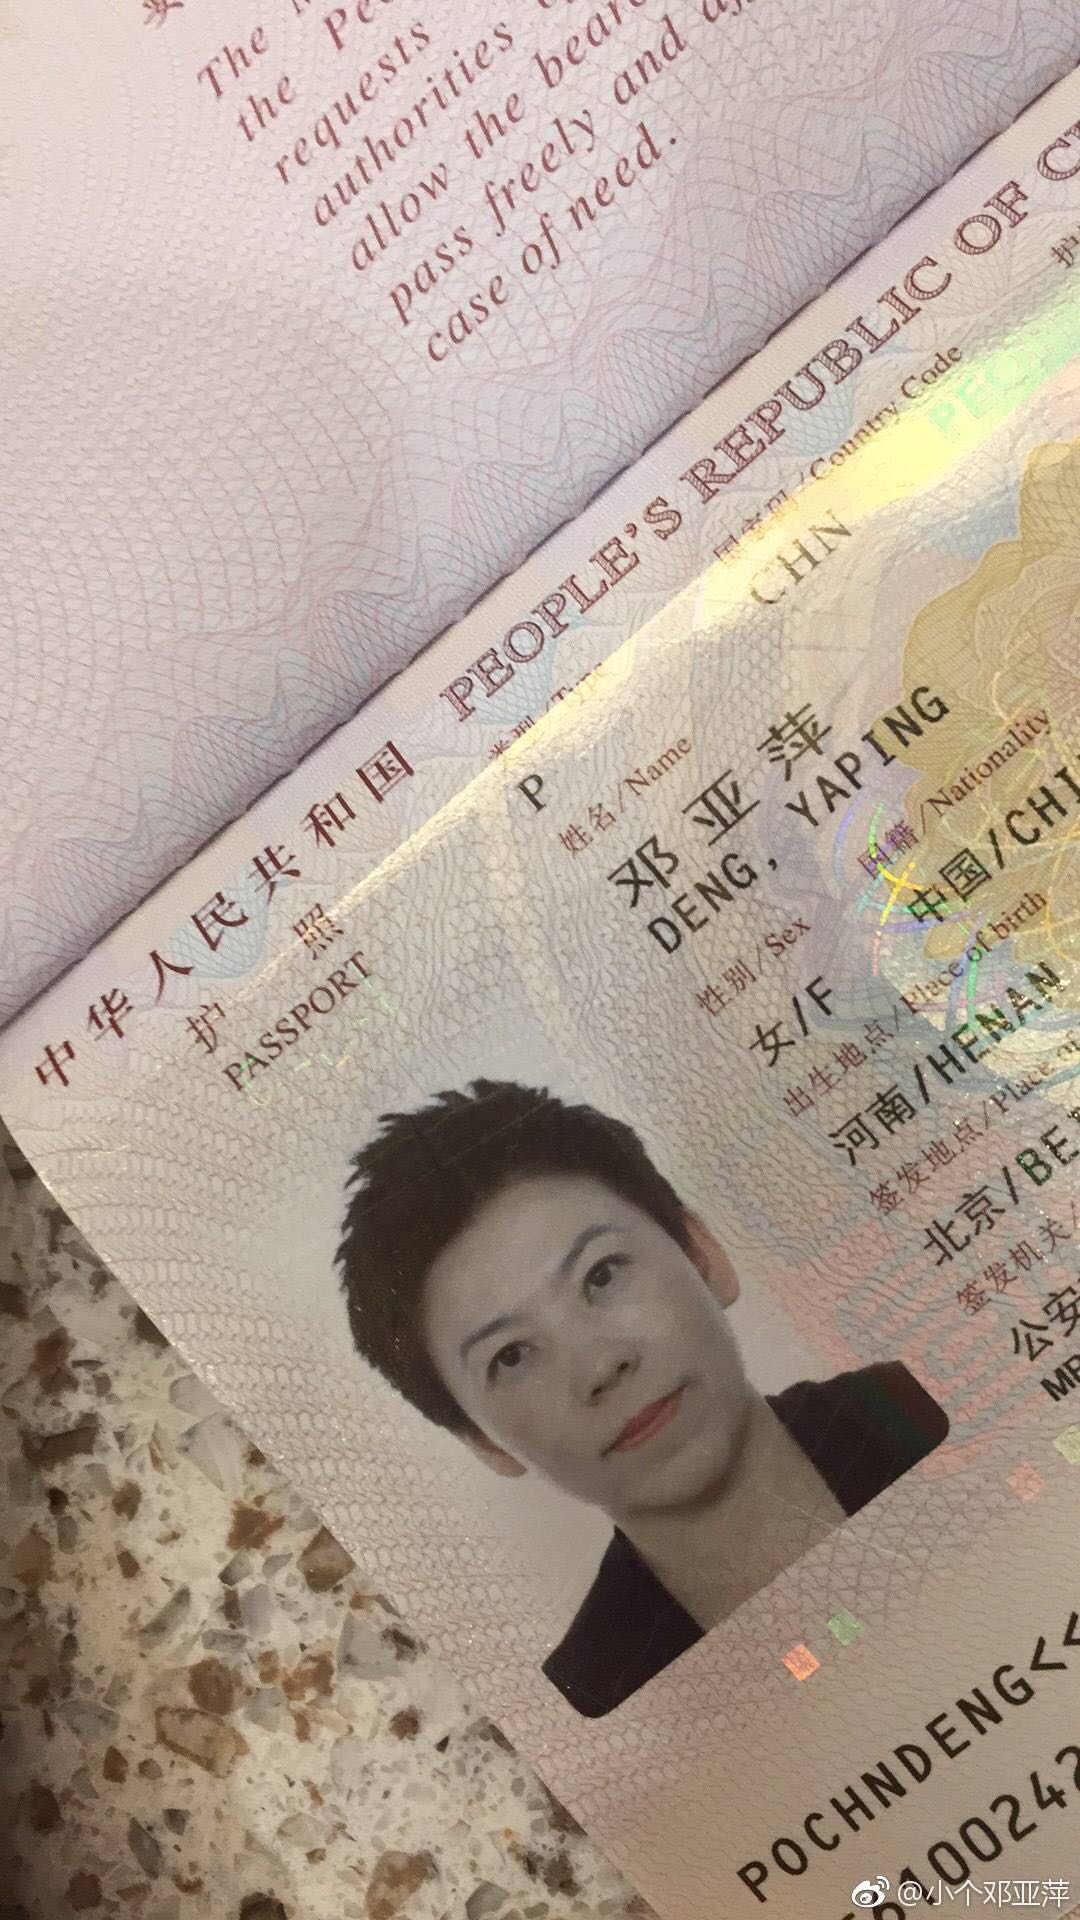 护照个人信息页图片